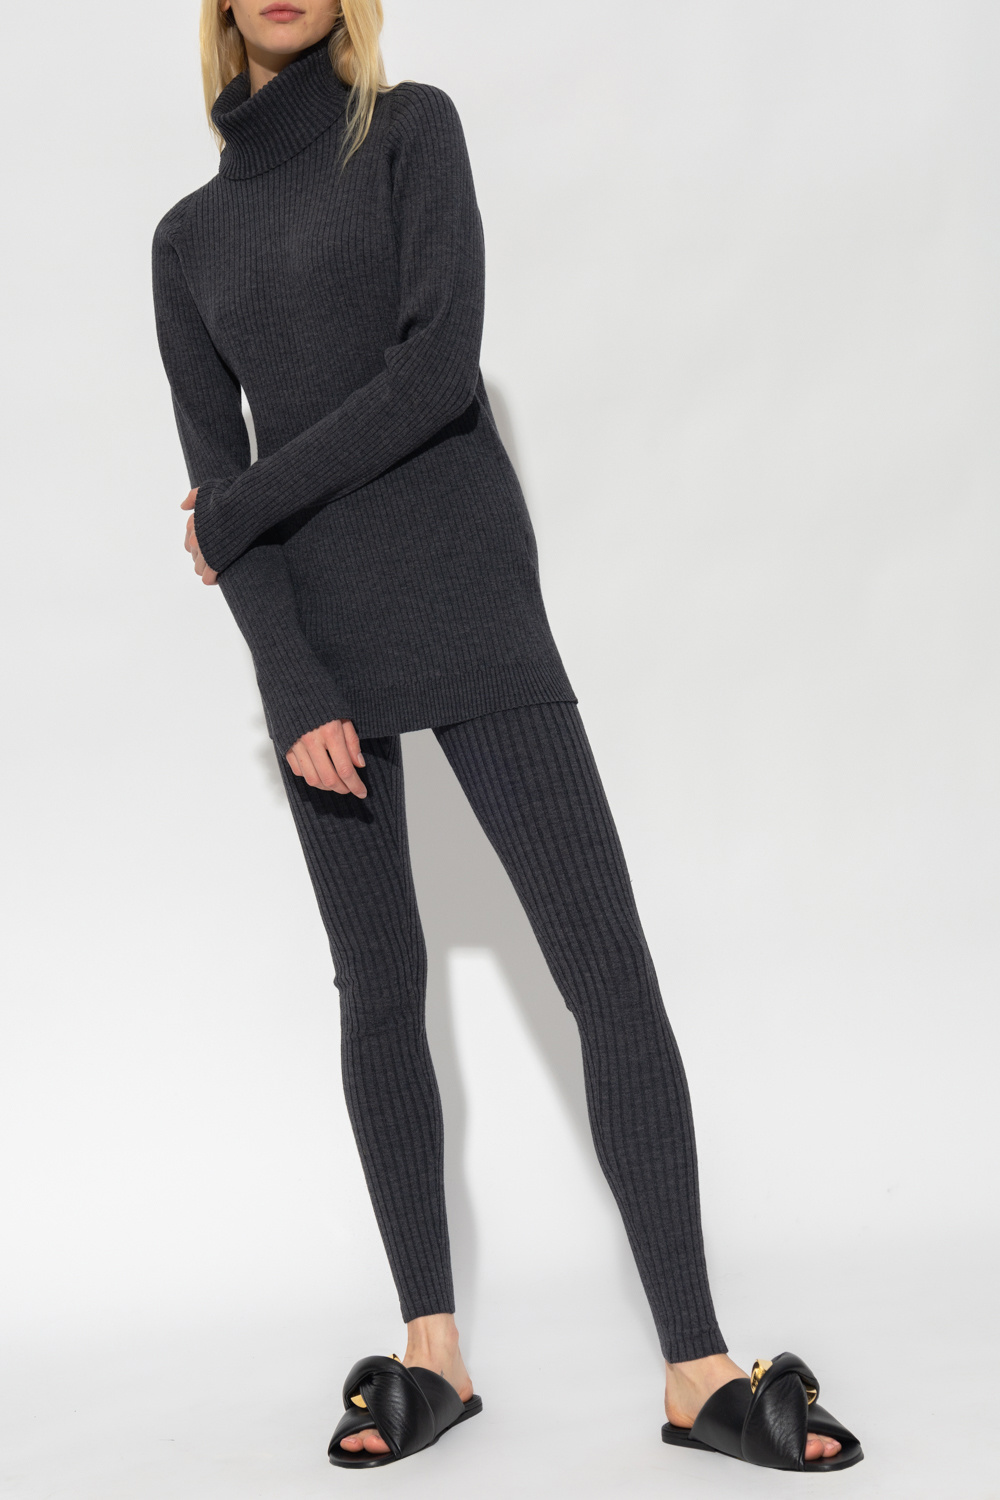 HENRIK VIBSKOV 3D pinstripe midi dress - GenesinlifeShops France - Grey  Wool leggings TOTEME